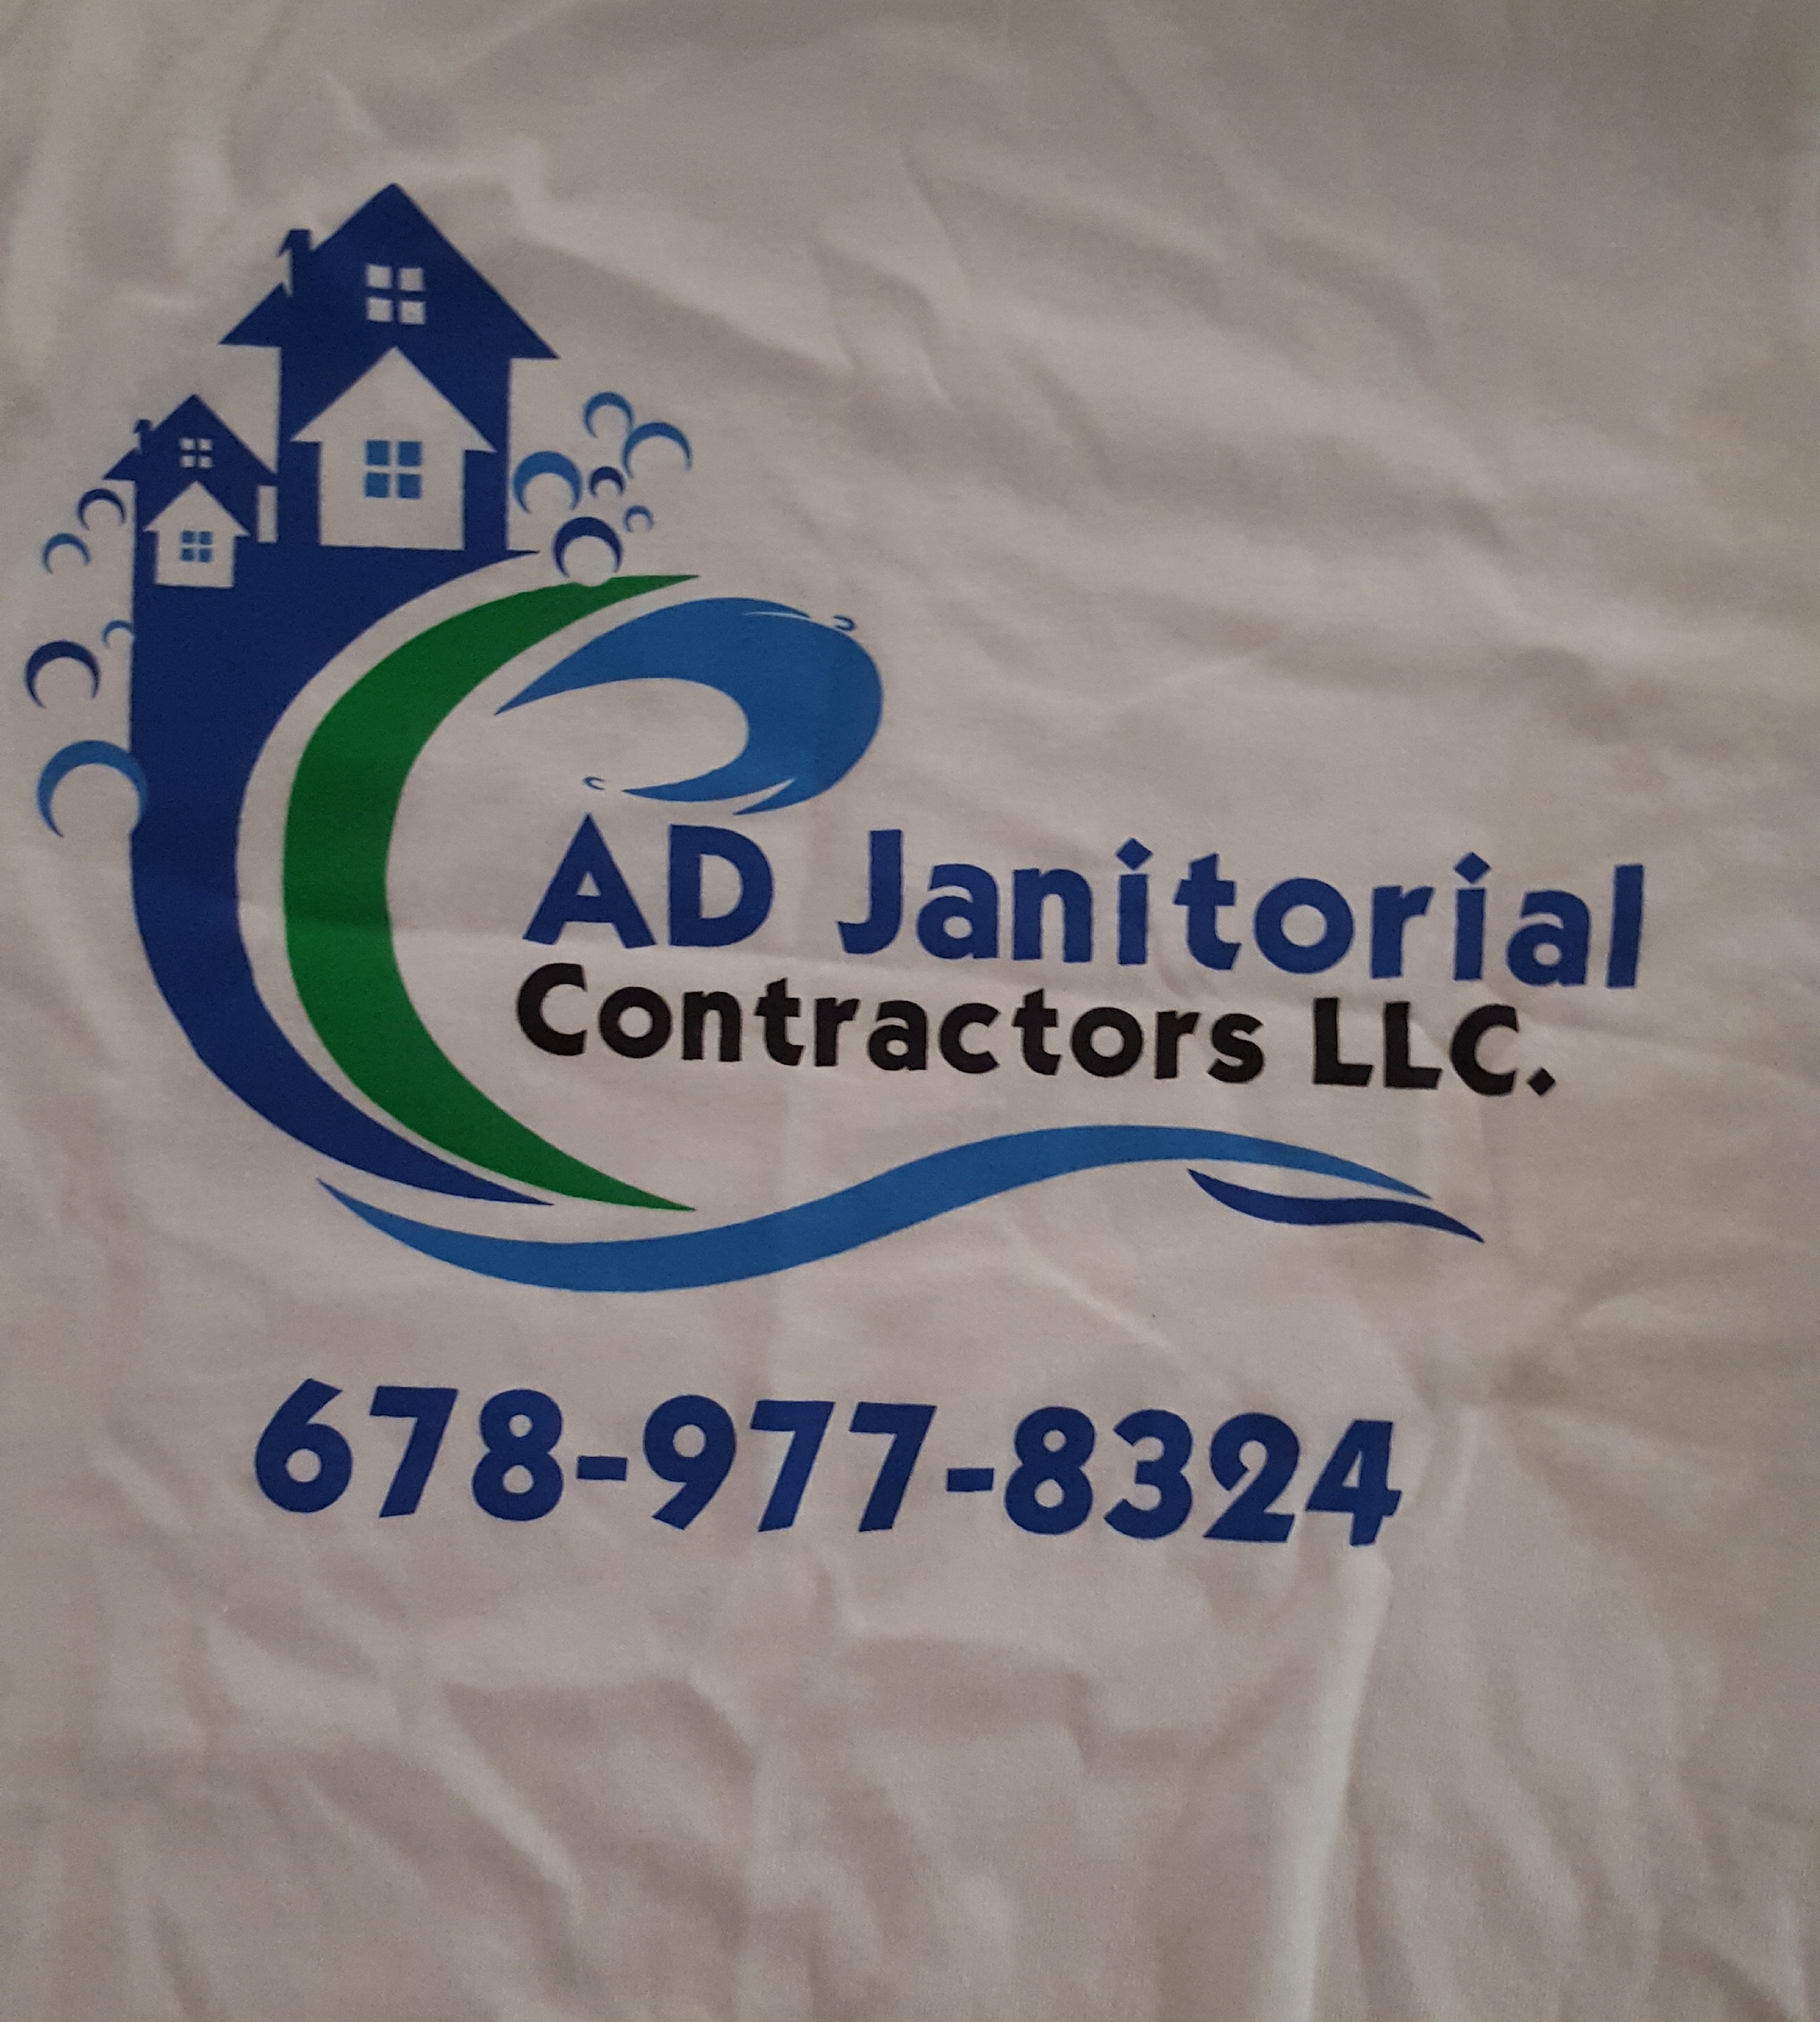 AD Janitorial Contractors, LLC. Logo